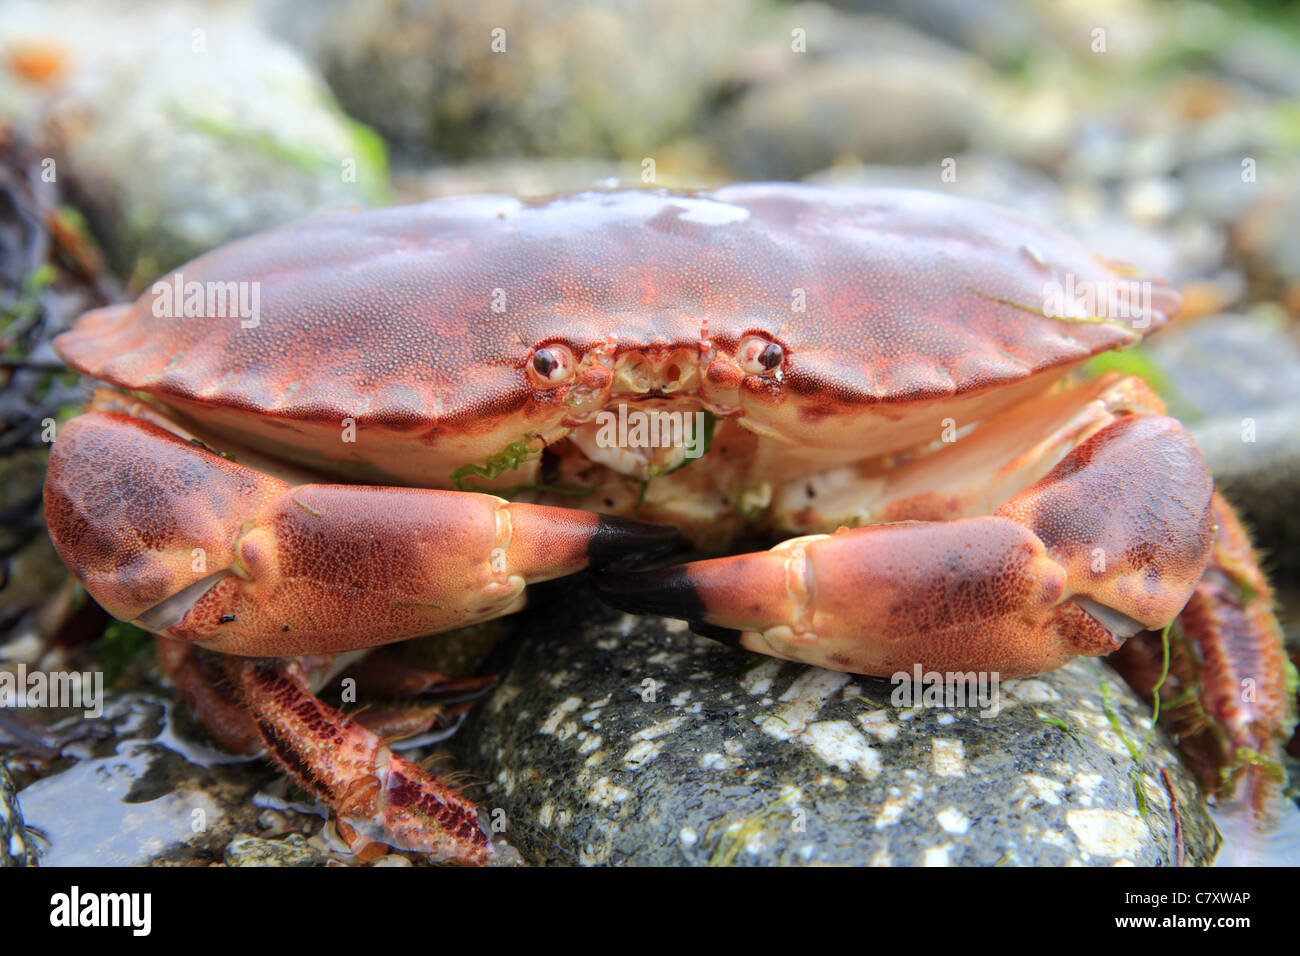 Edible Crab 'Cancer pagurus' on shore, beach, England UK Stock Photo